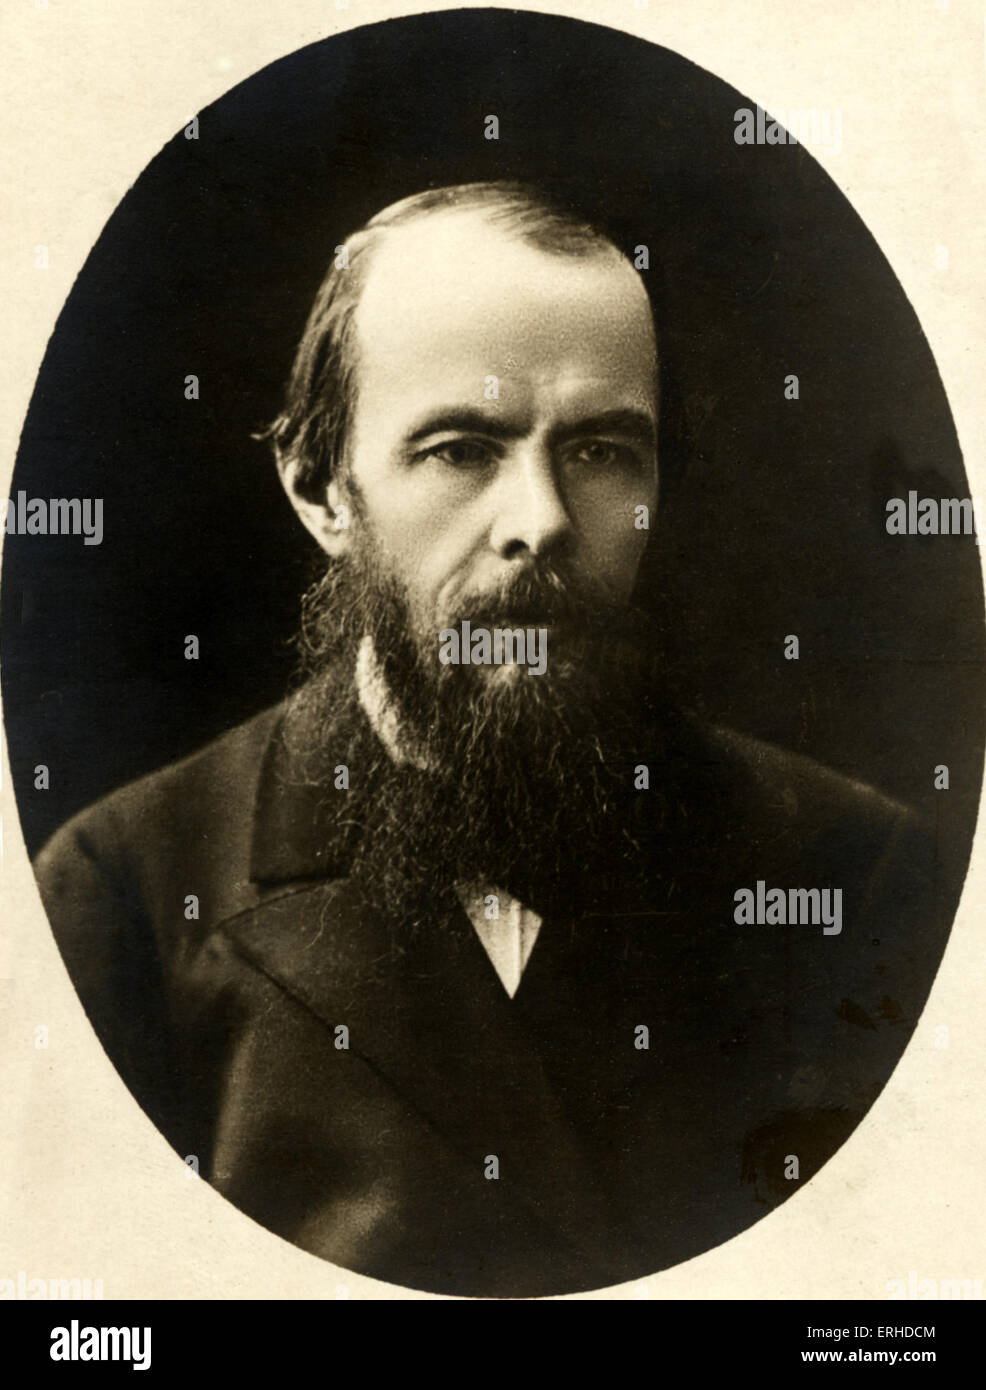 Fyodor Dostoevsky, russische Schriftsteller. Schrieb Schuld & Sühne, Brüder Karamasow, Dostoyevsky. Stockfoto